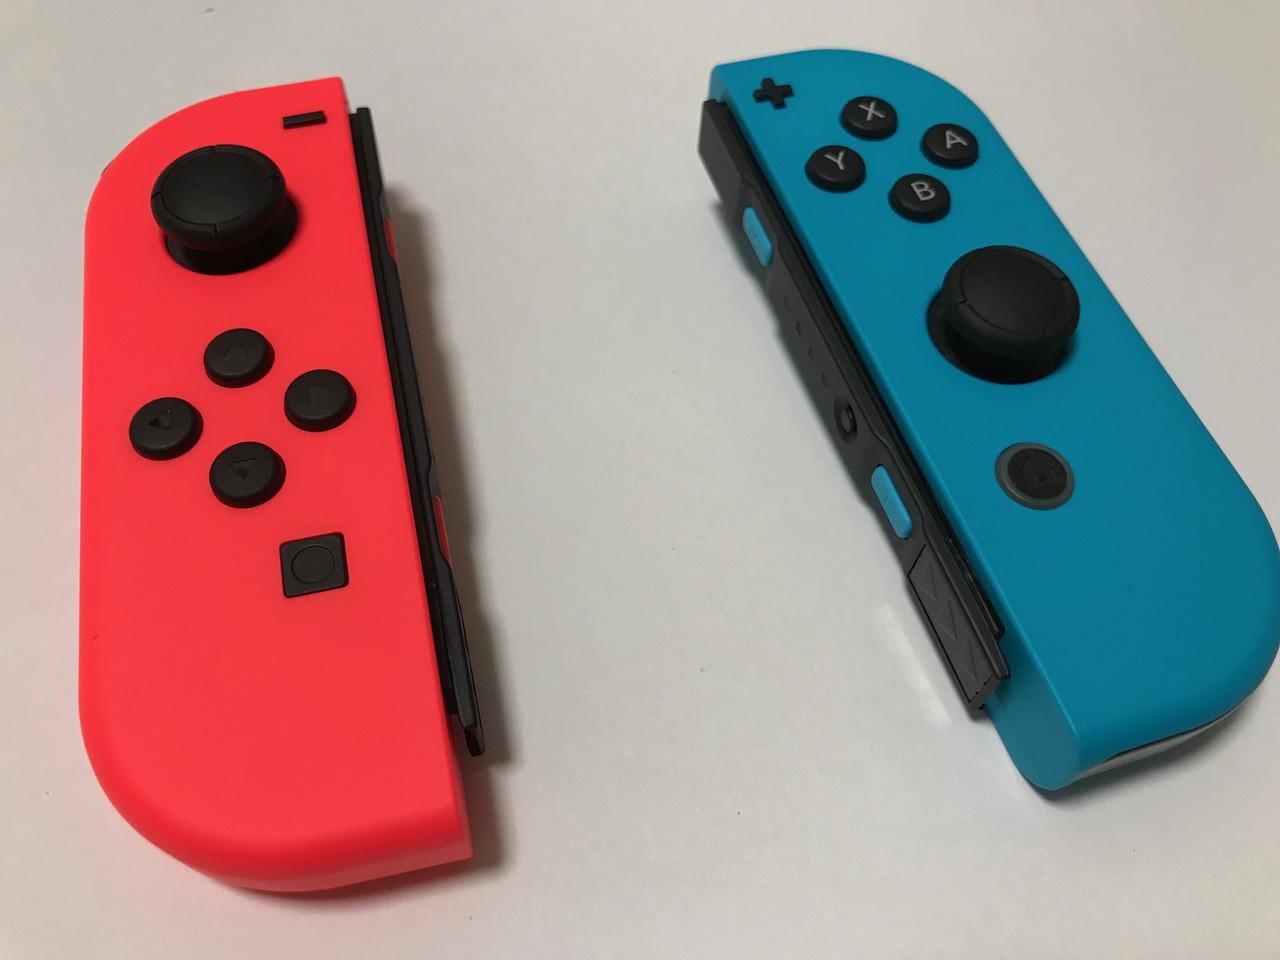 Nintendo Switch用コントローラー Joy Con L ネオンレッド R ネオンブルー を購入 ソフトアンテナブログ